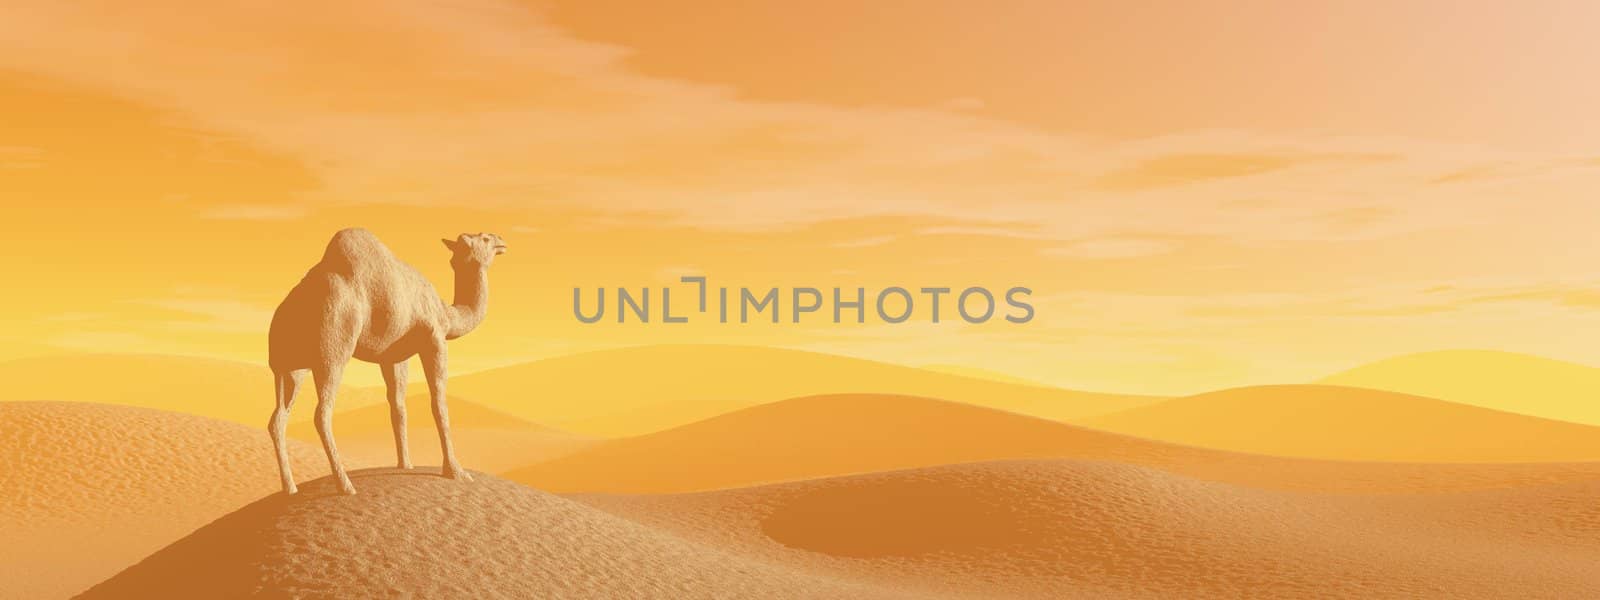 Camel standing in the desert by sunset light - 3D render